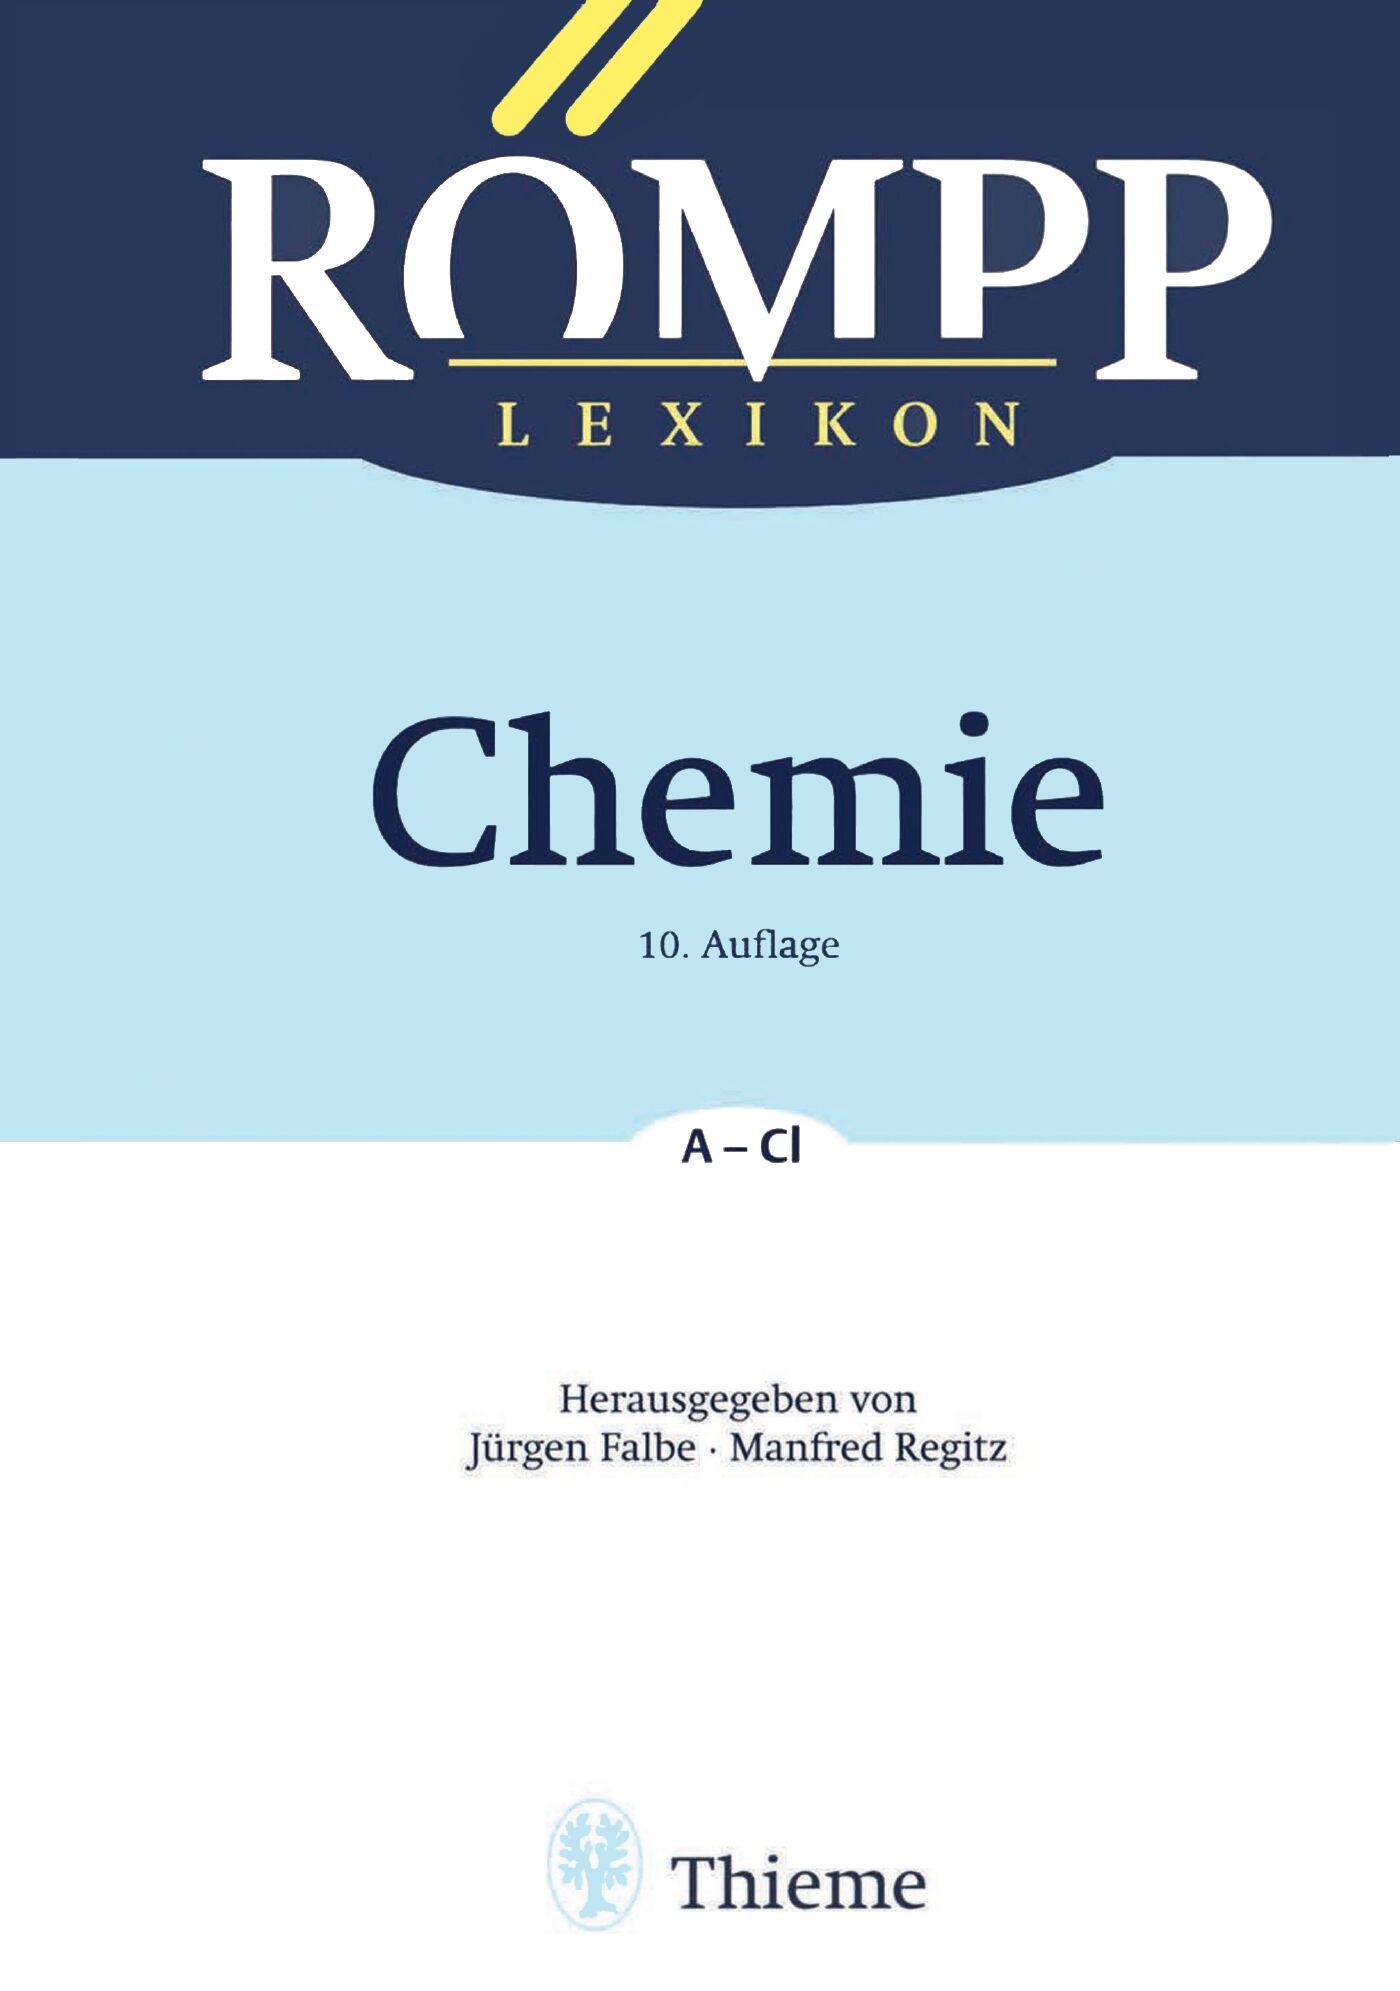 RÖMPP Lexikon Chemie, 10. Auflage, 1996-1999, 9783131999511